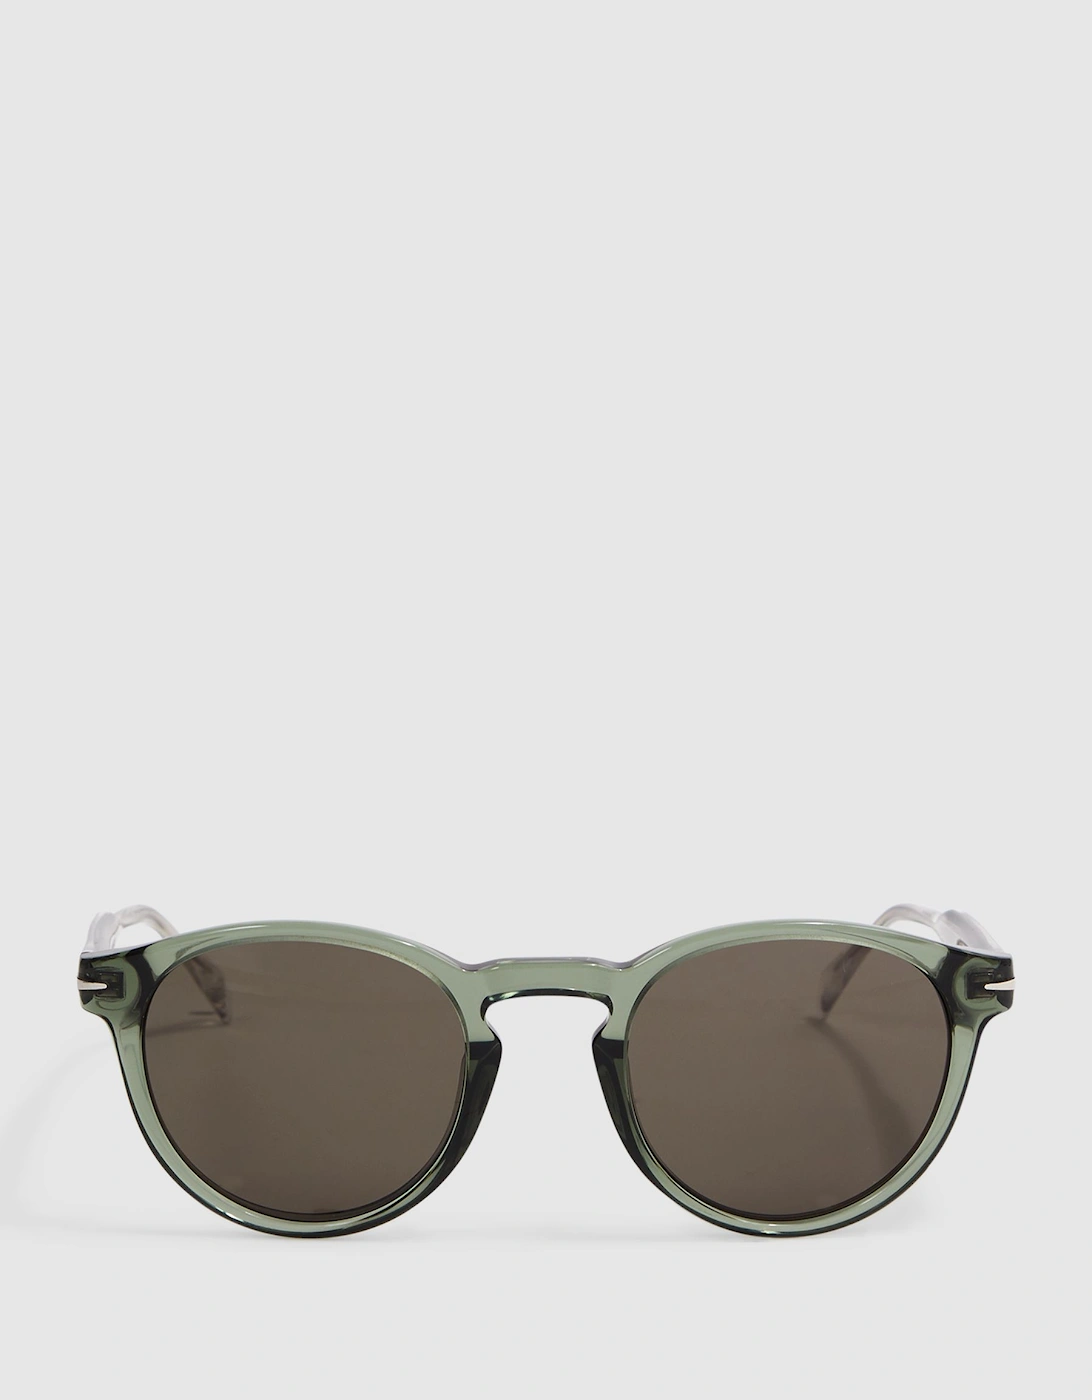 Eyewear by David Beckham Rounded Sunglasses, 2 of 1